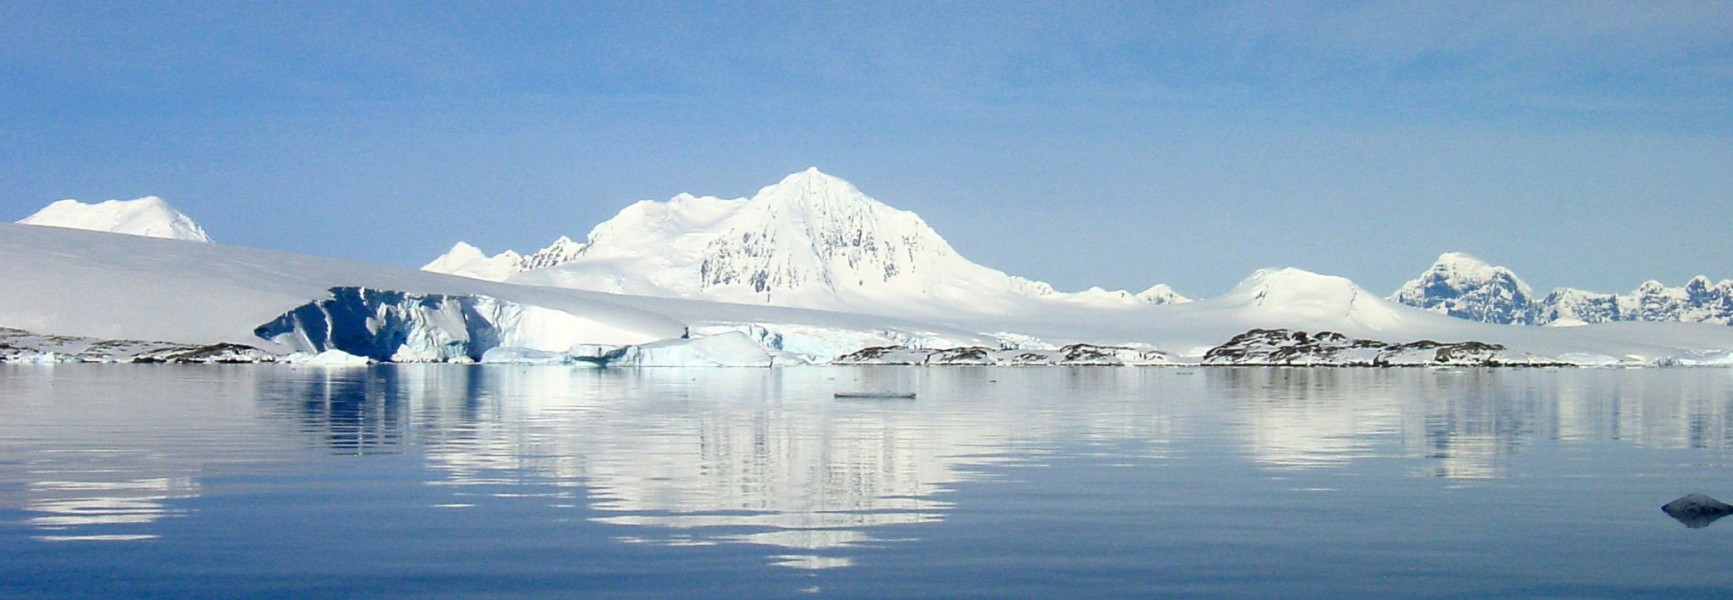 Mount William - Antarctica